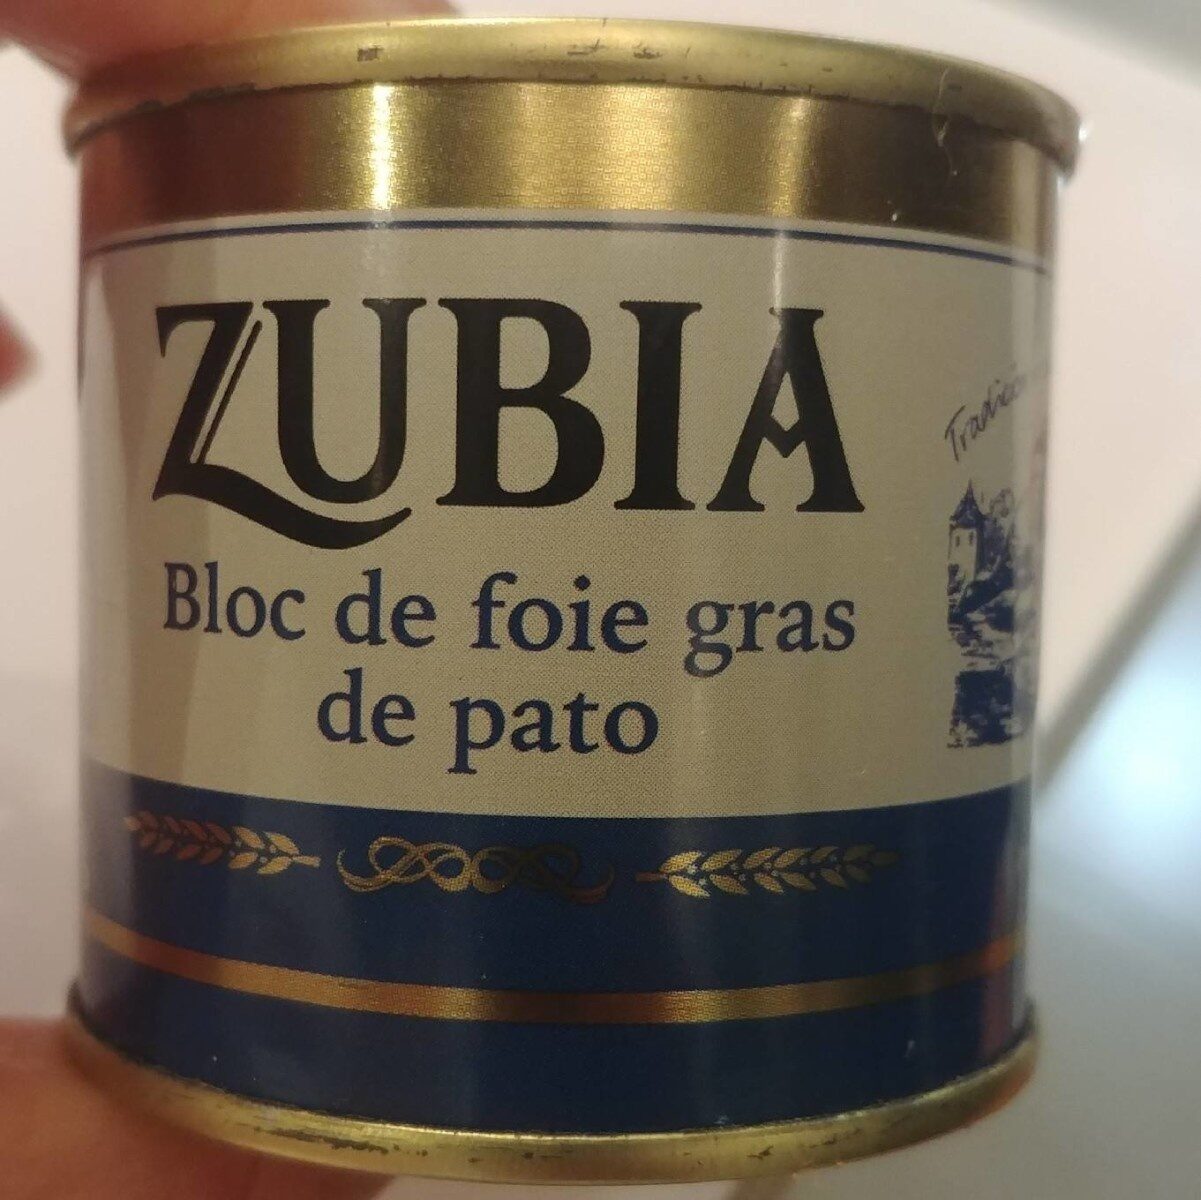 Bloc de foie gras de pato - Product - es